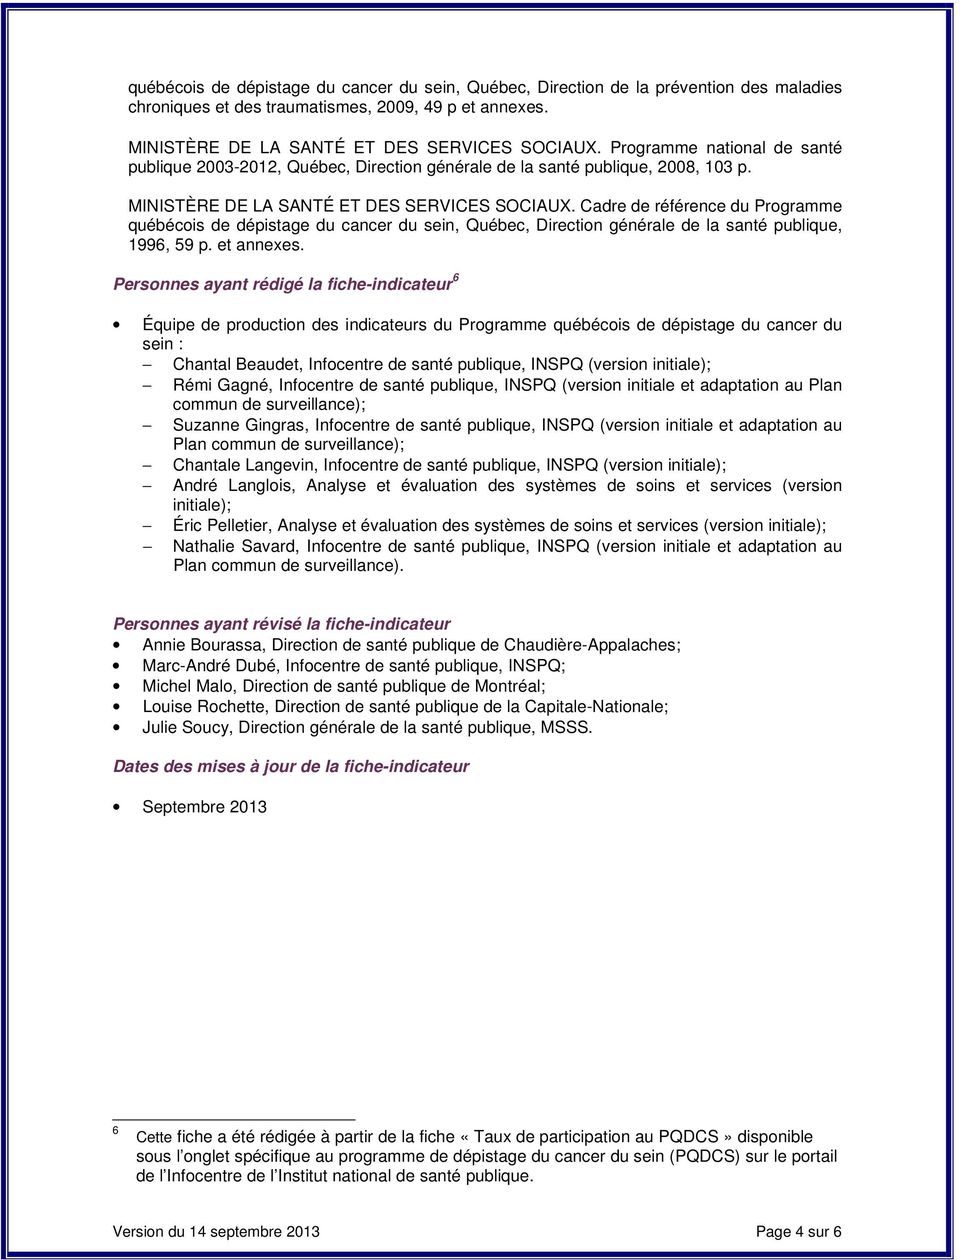 Cadre de référence du Programme québécois de dépistage du cancer du sein, Québec, Direction générale de la santé publique, 1996, 59 p. et annexes.